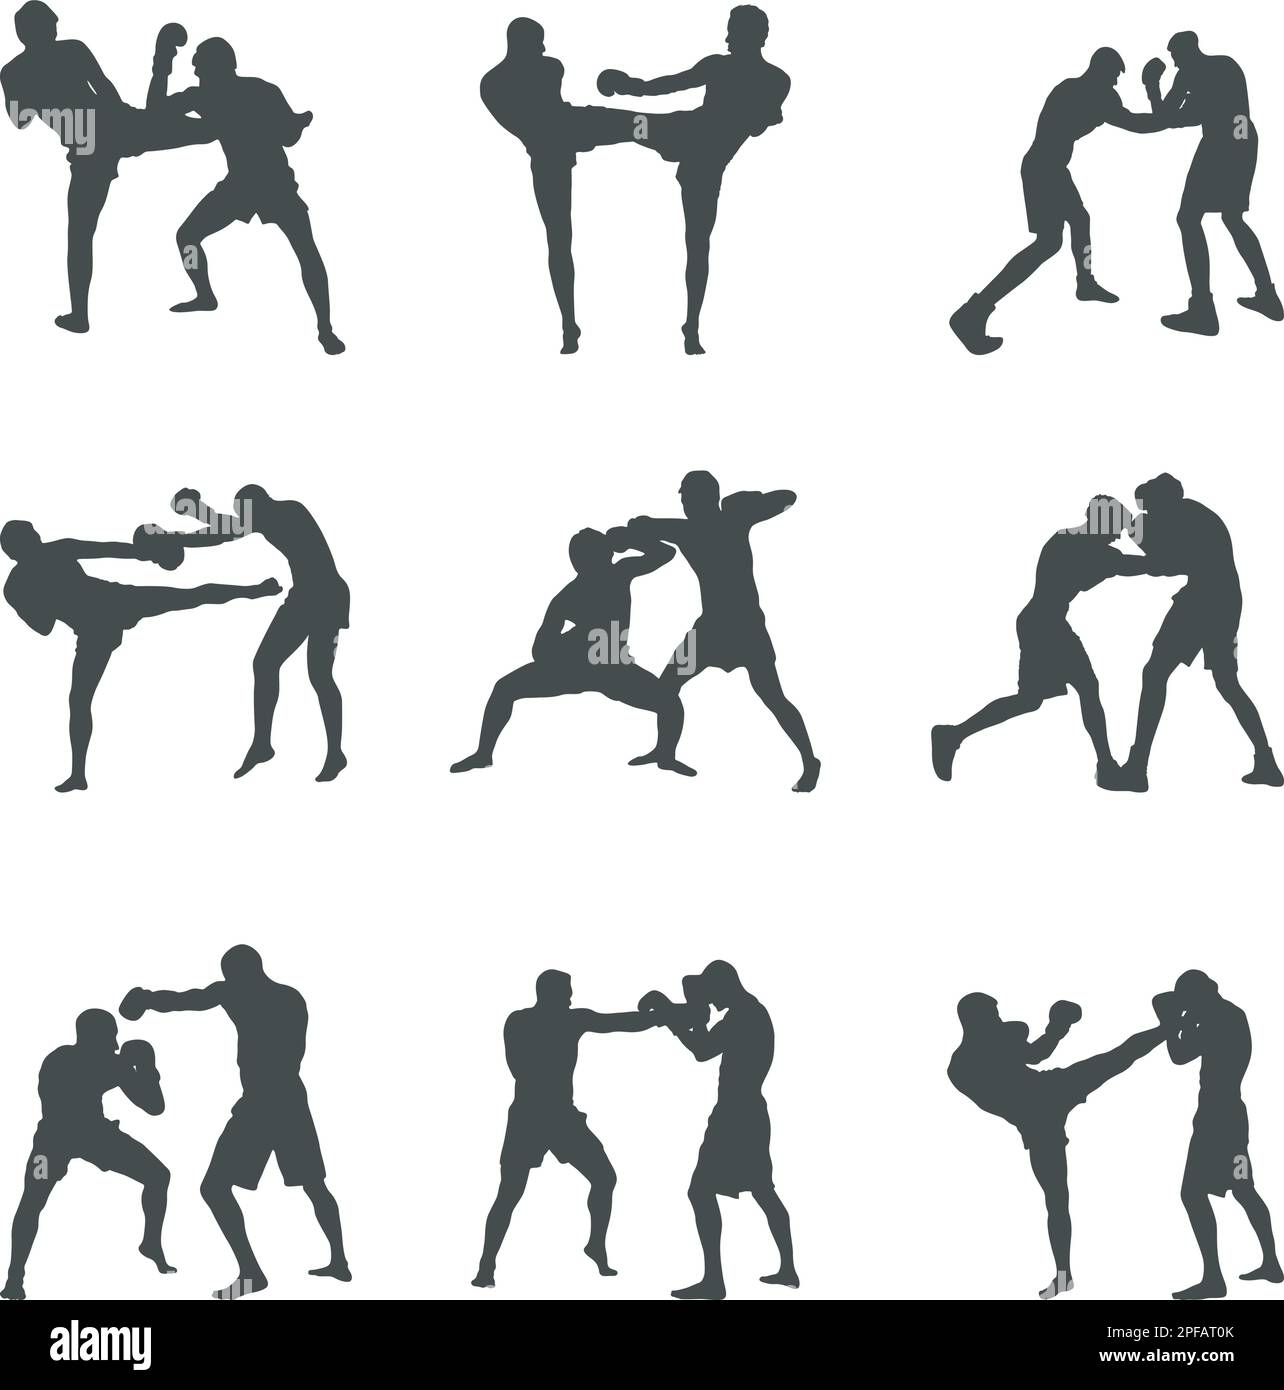 Silhouettes de boxe, ensemble de silhouettes de boxe, silhouettes de boxe, SVG de boxe, vecteur de boxe Illustration de Vecteur